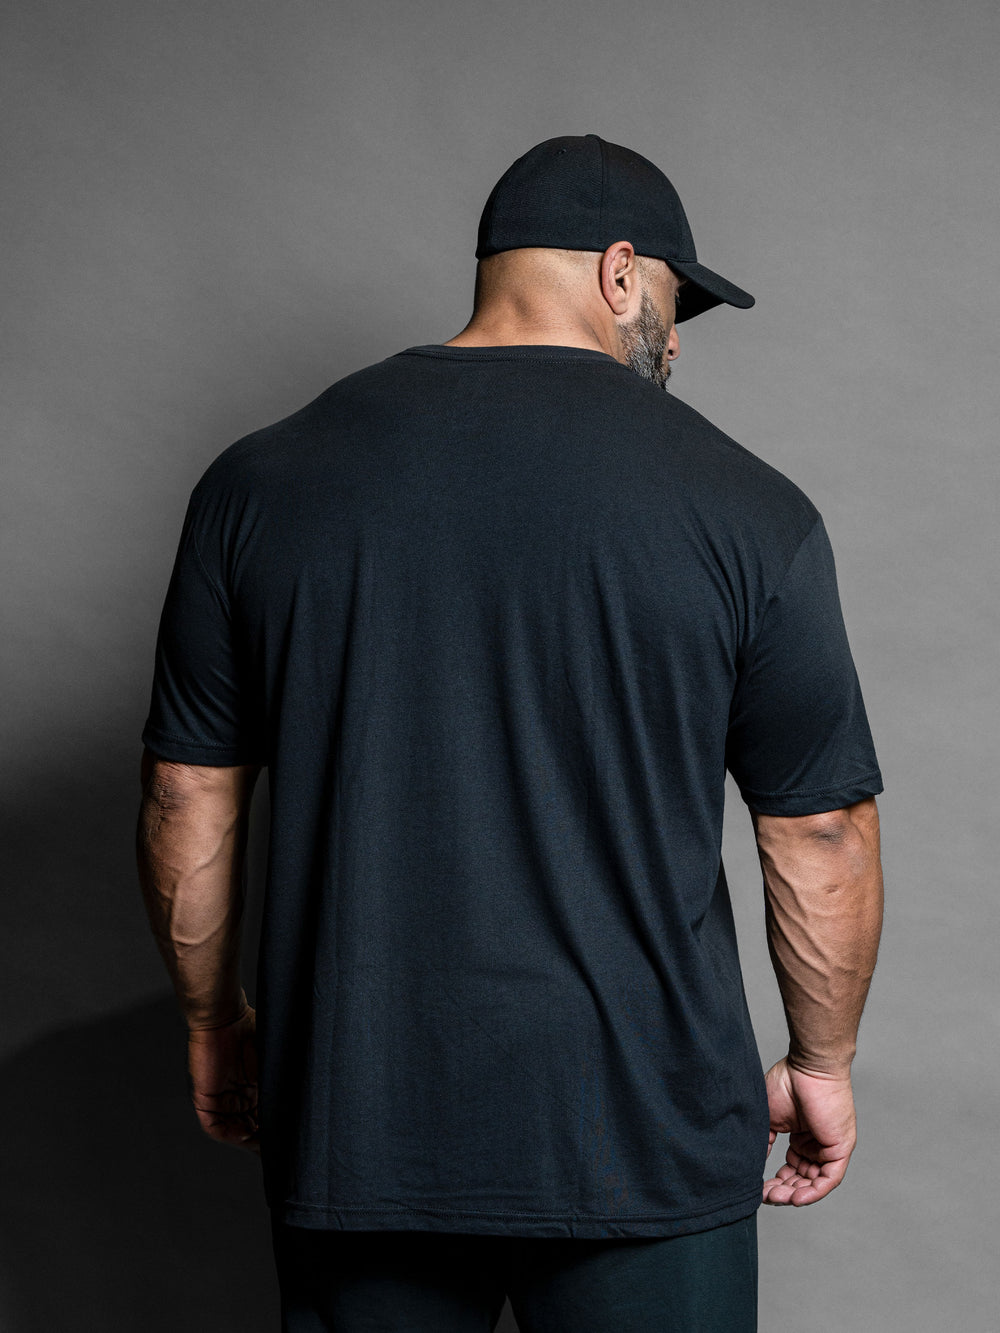 Bodybuilding & Bollocks T-Shirt Black - Model Bodybuilder Fouad Abiad